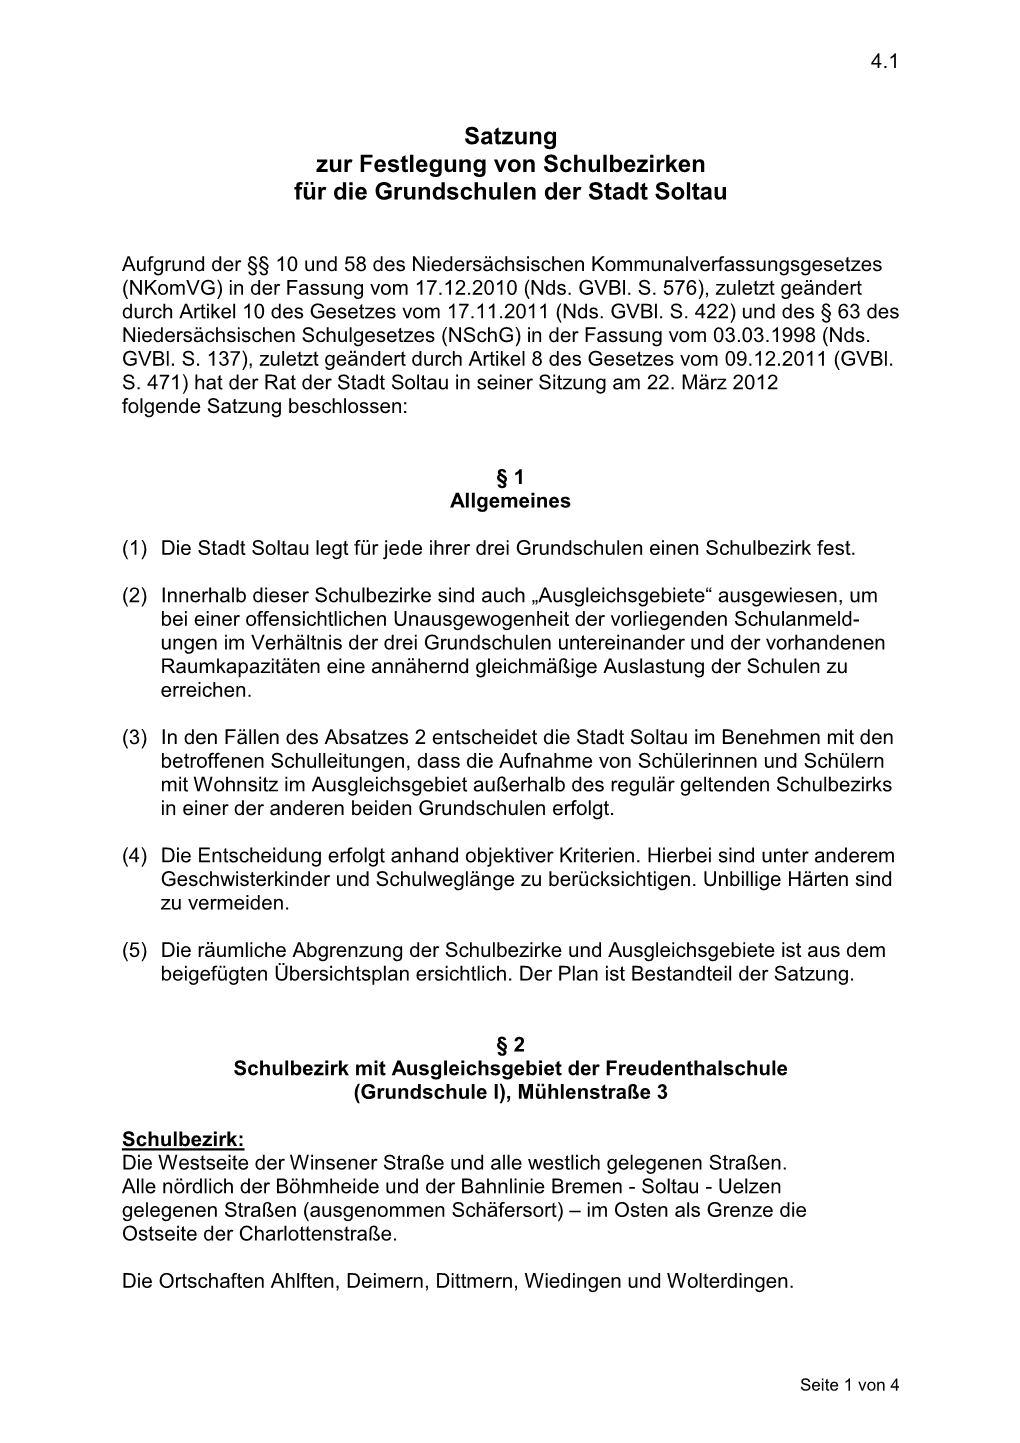 Satzung Zur Festlegung Von Schulbezirken Für Die Grundschulen Der Stadt Soltau